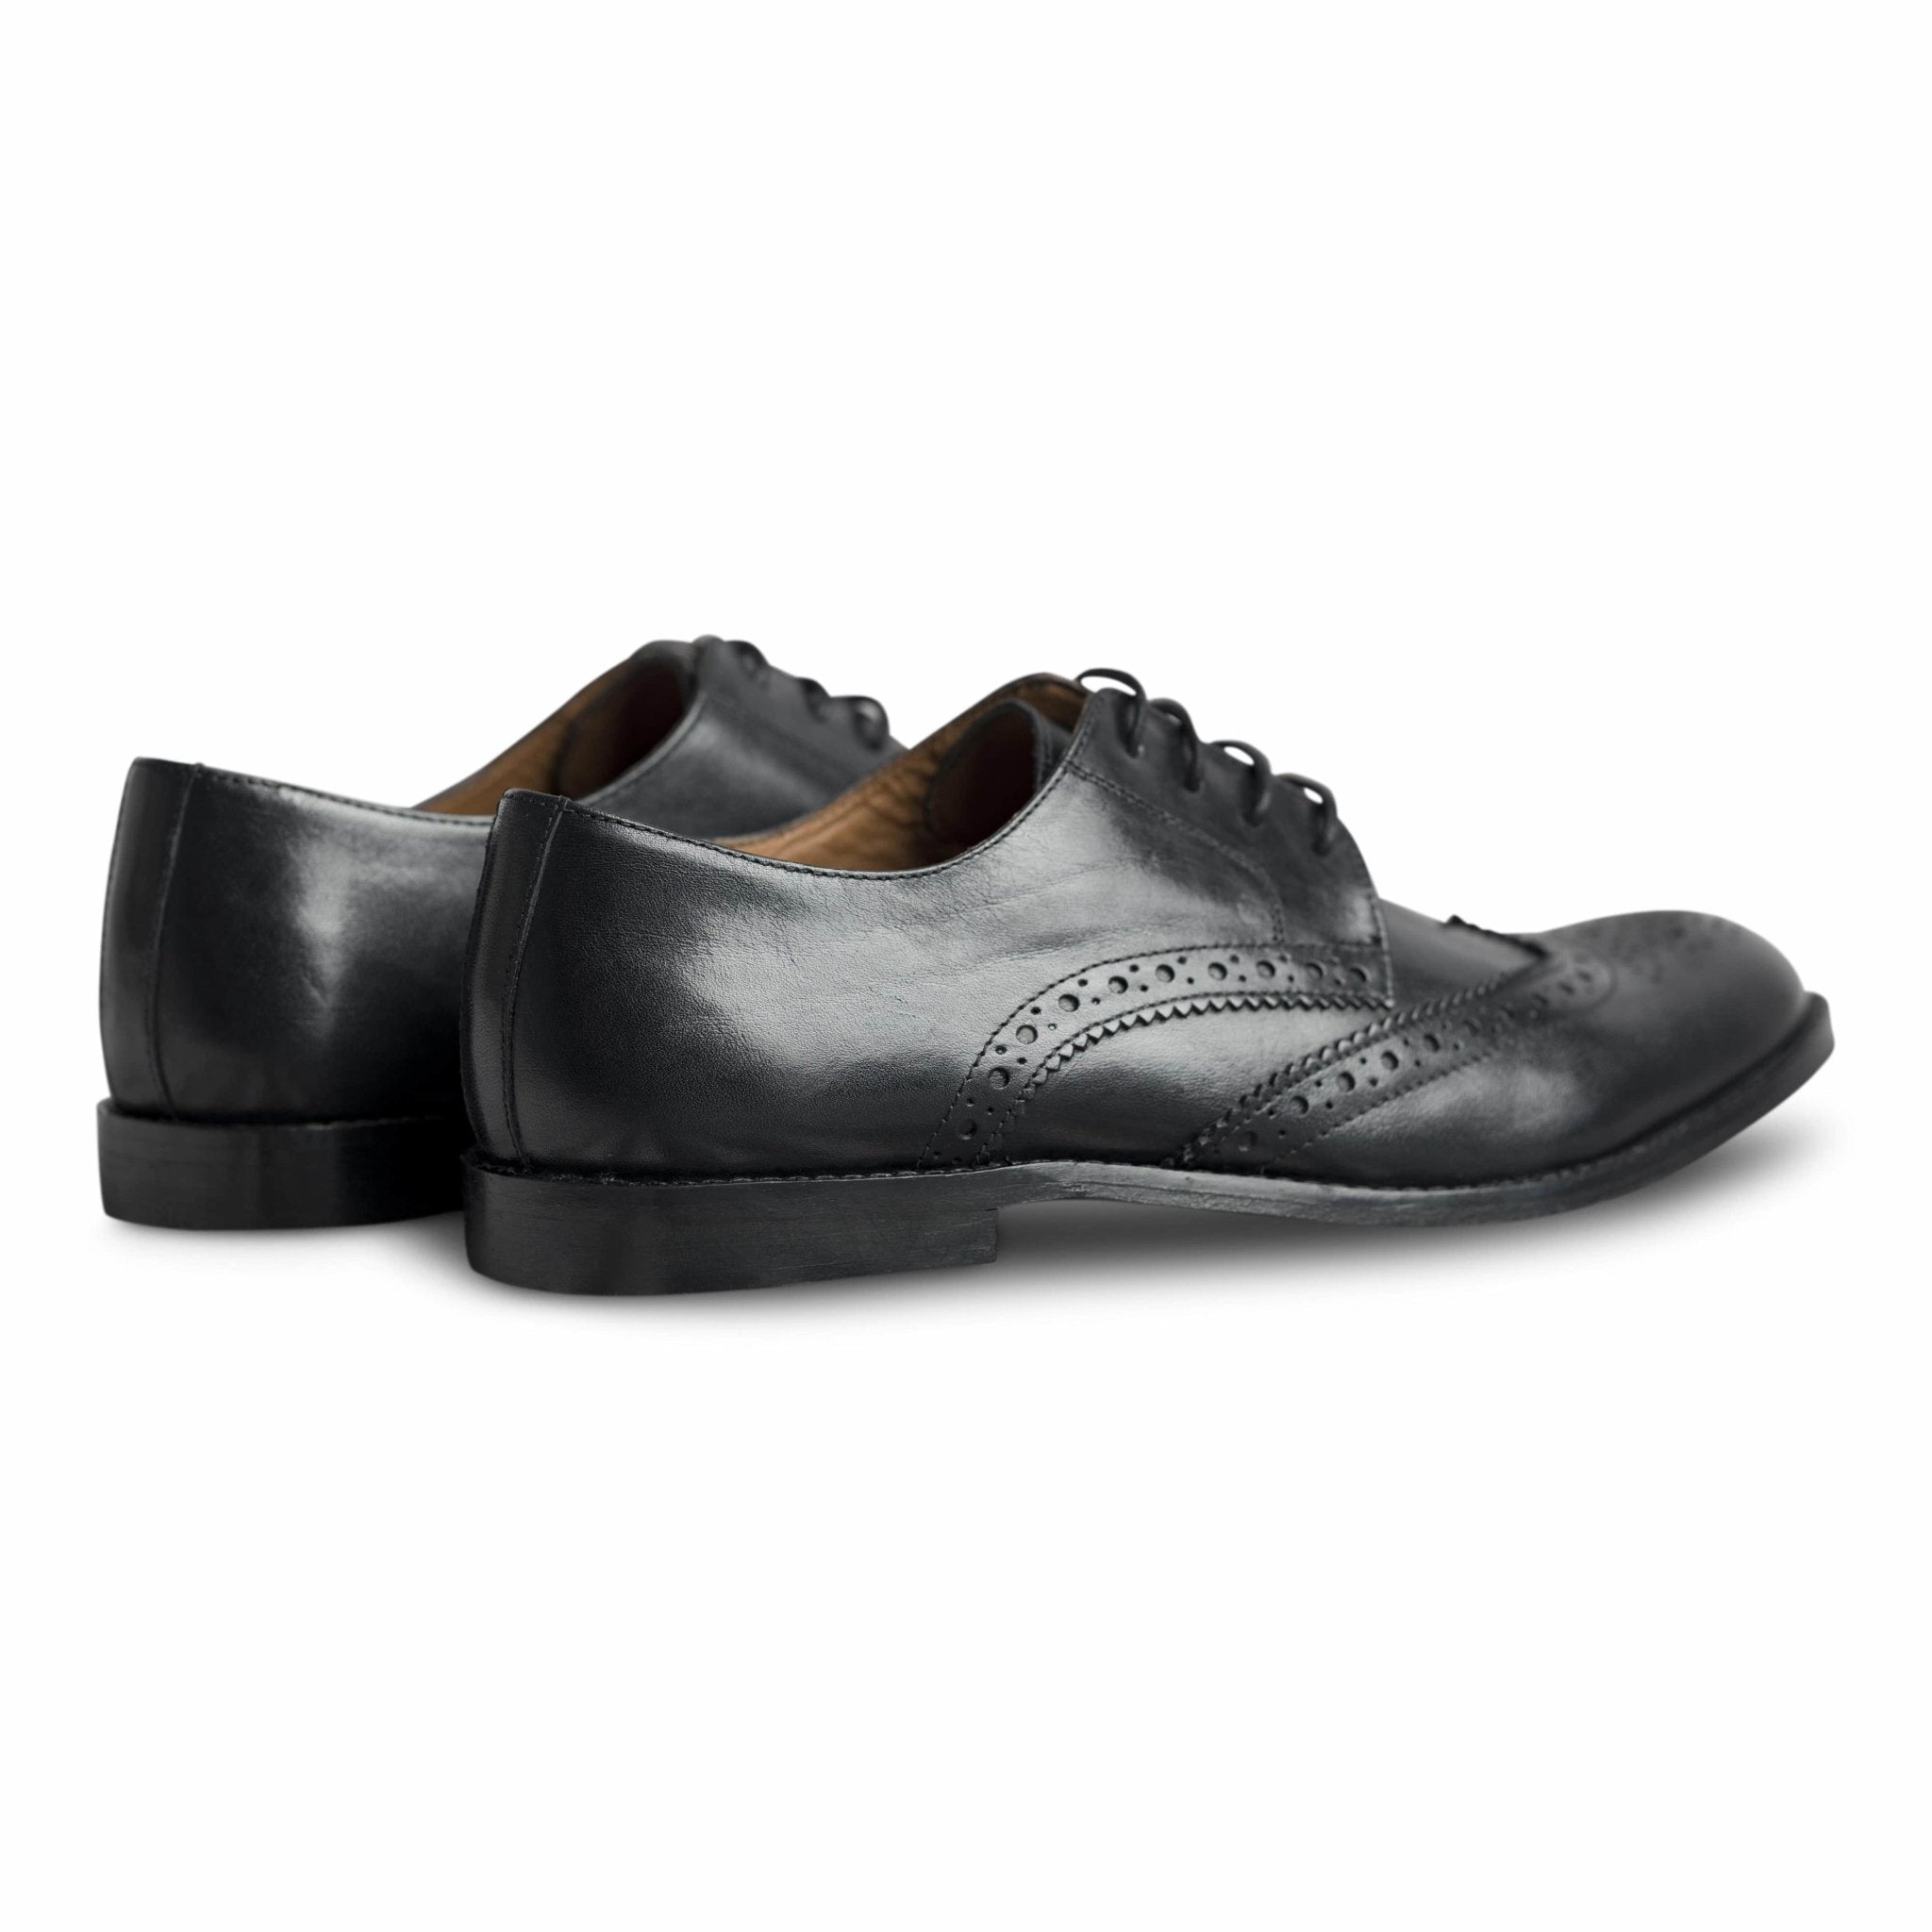 Carbonio - dmodot Shoes